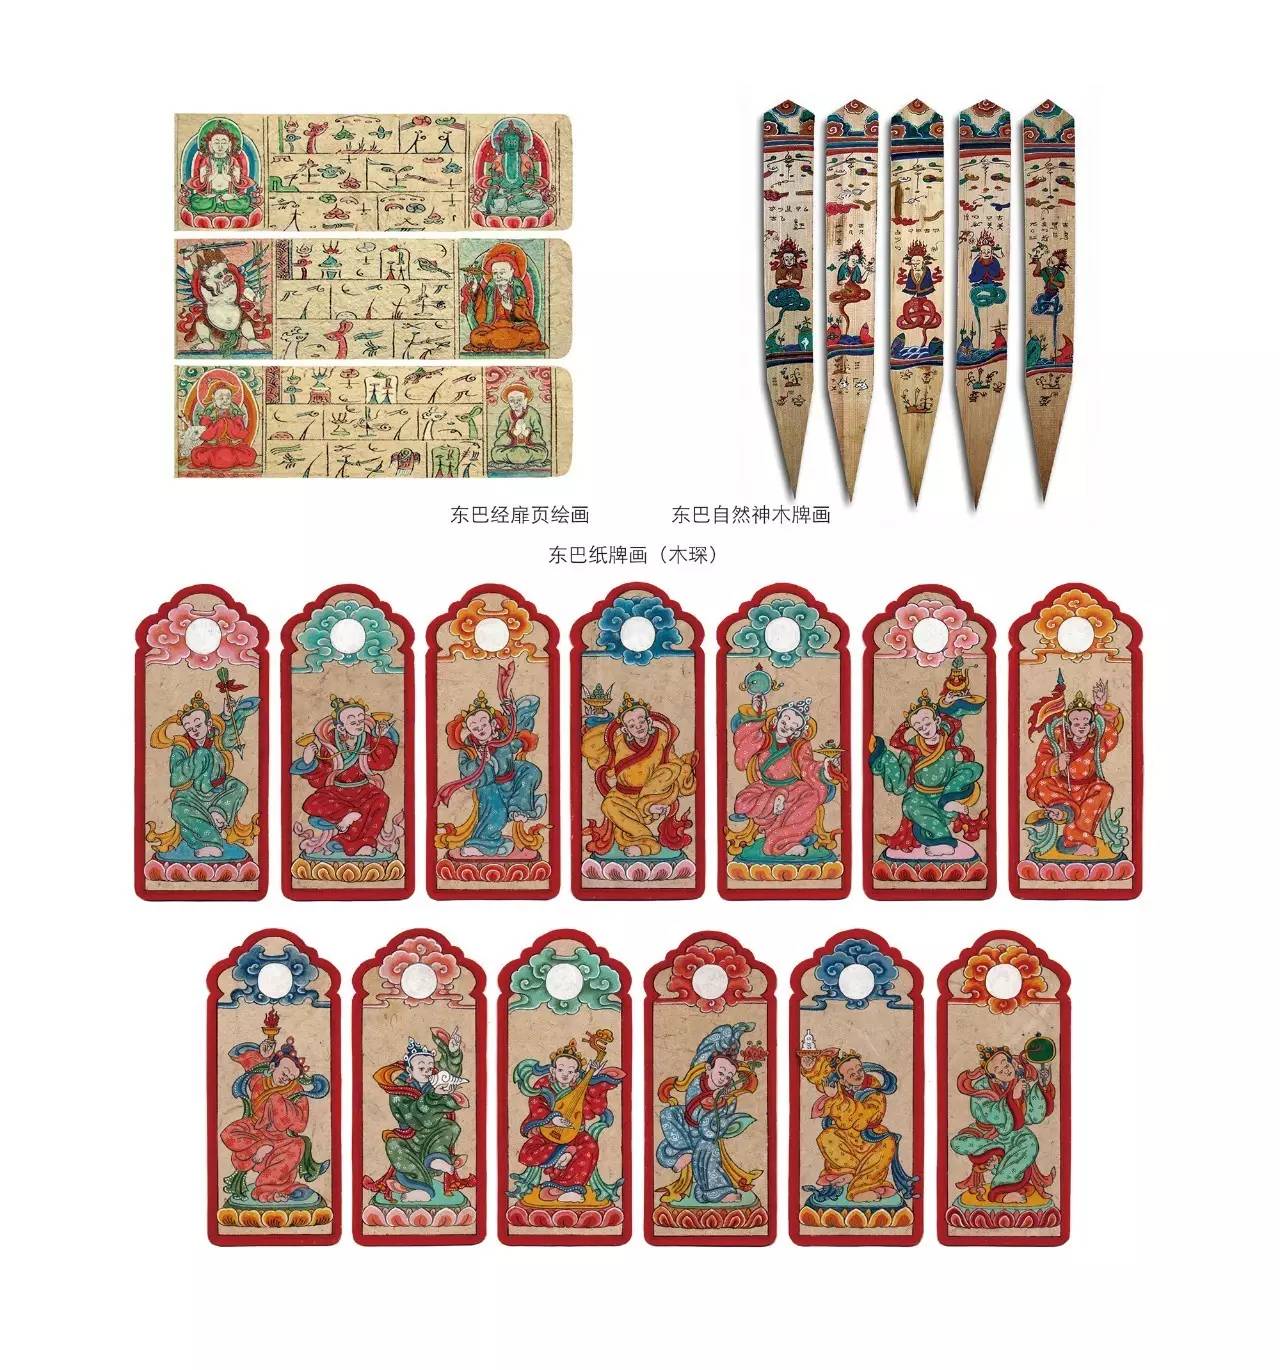 【丽江文化】知道纳西族东巴画吗?有个百年艺术展叫你